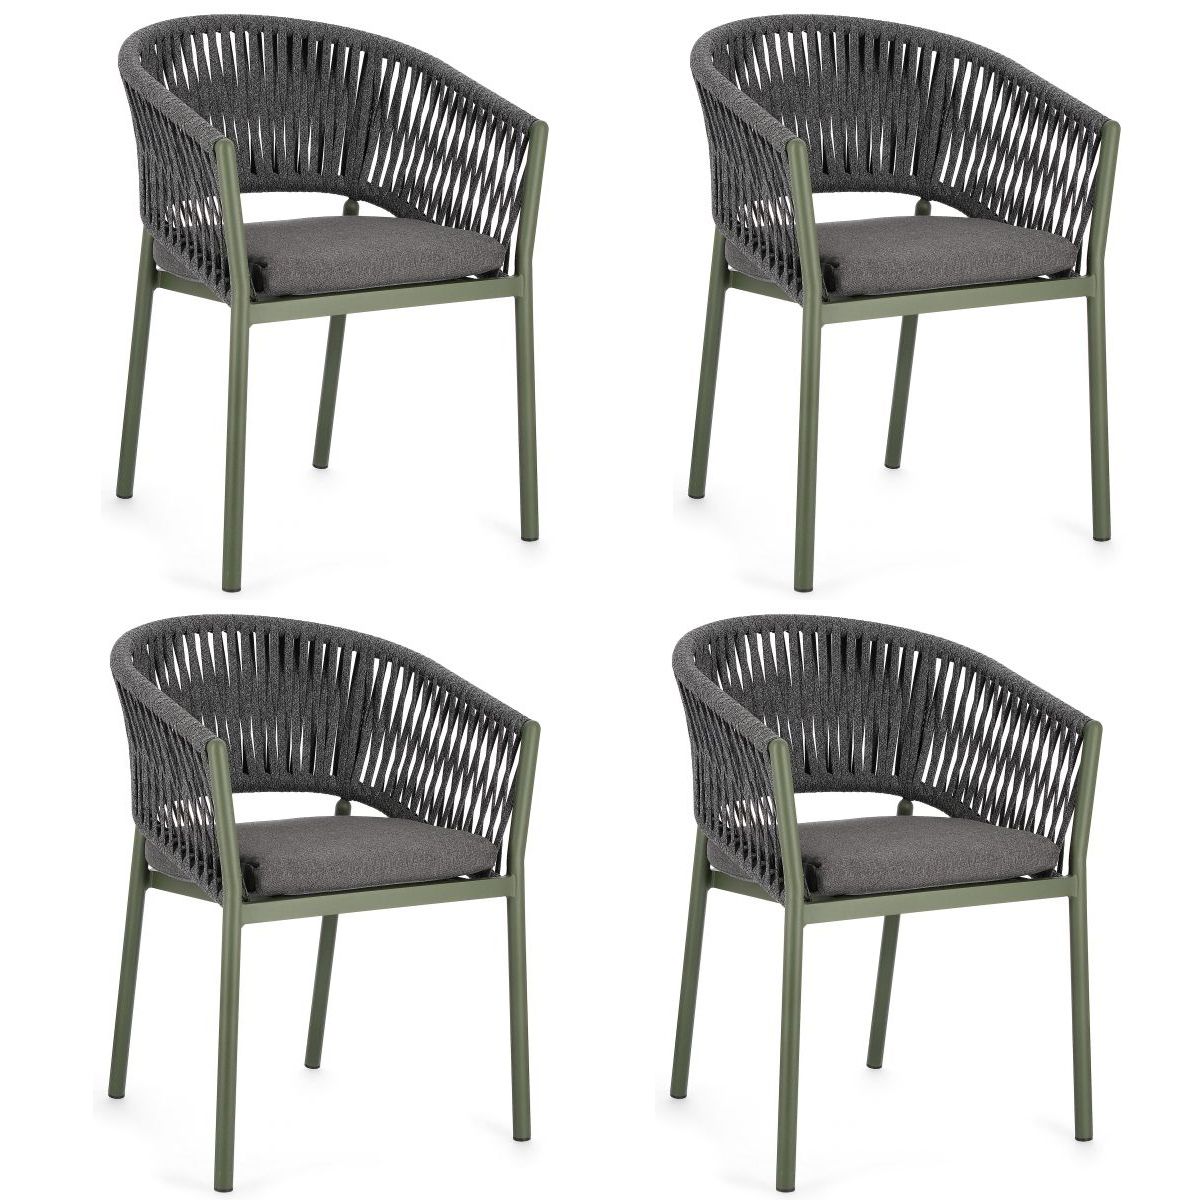 Gartenstühle stapelbar grün Set mit Florencia Pick-Up-Möbel Polster 4er